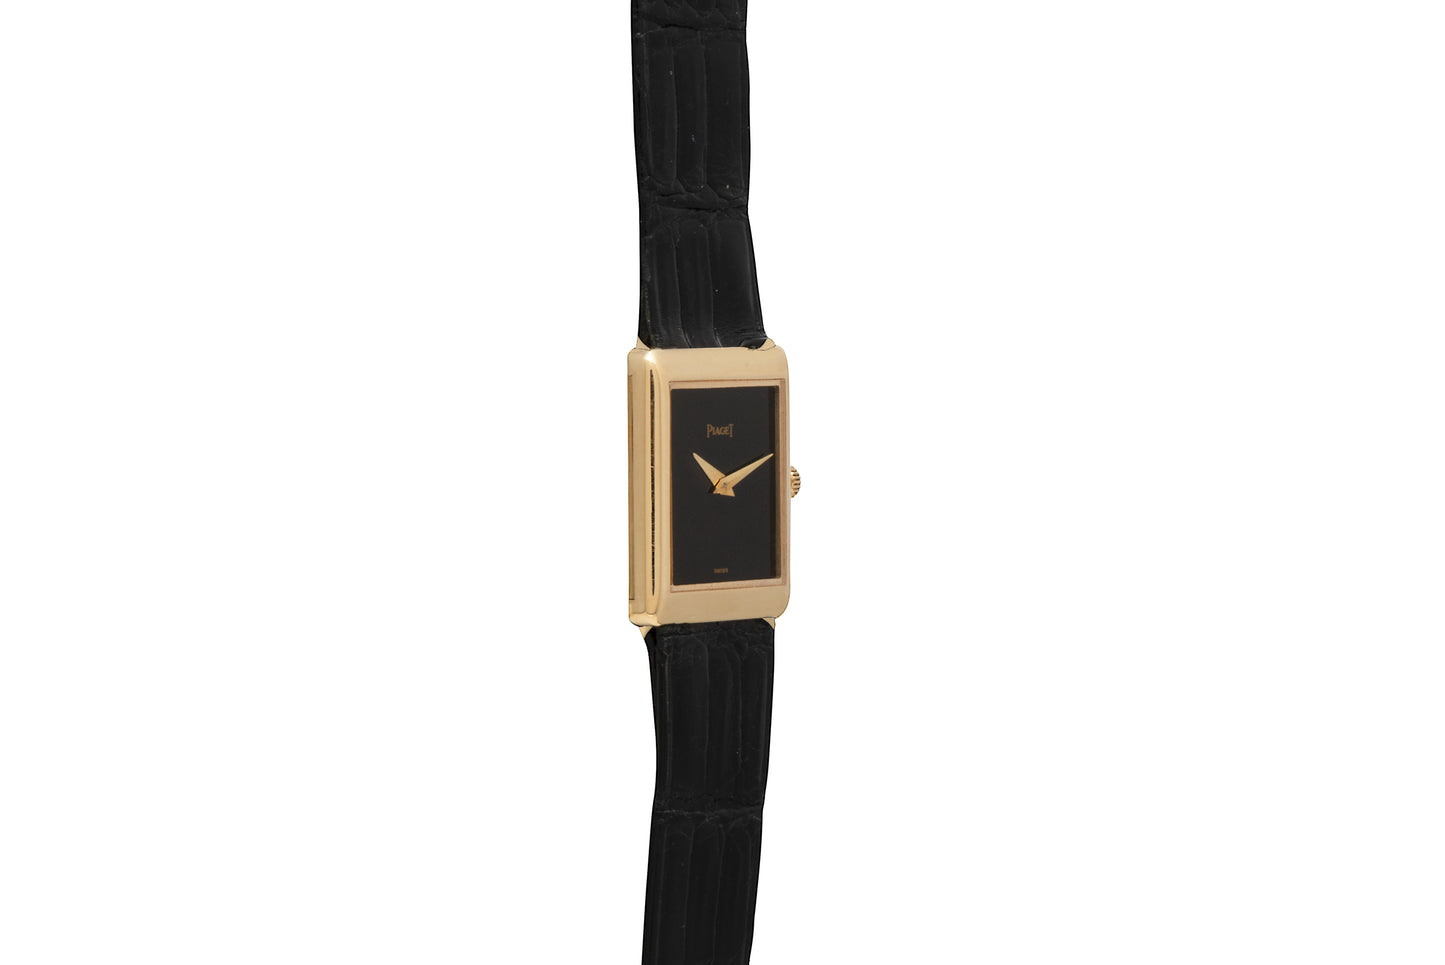 Piaget 'Onyx' Rectangular Dress Watch